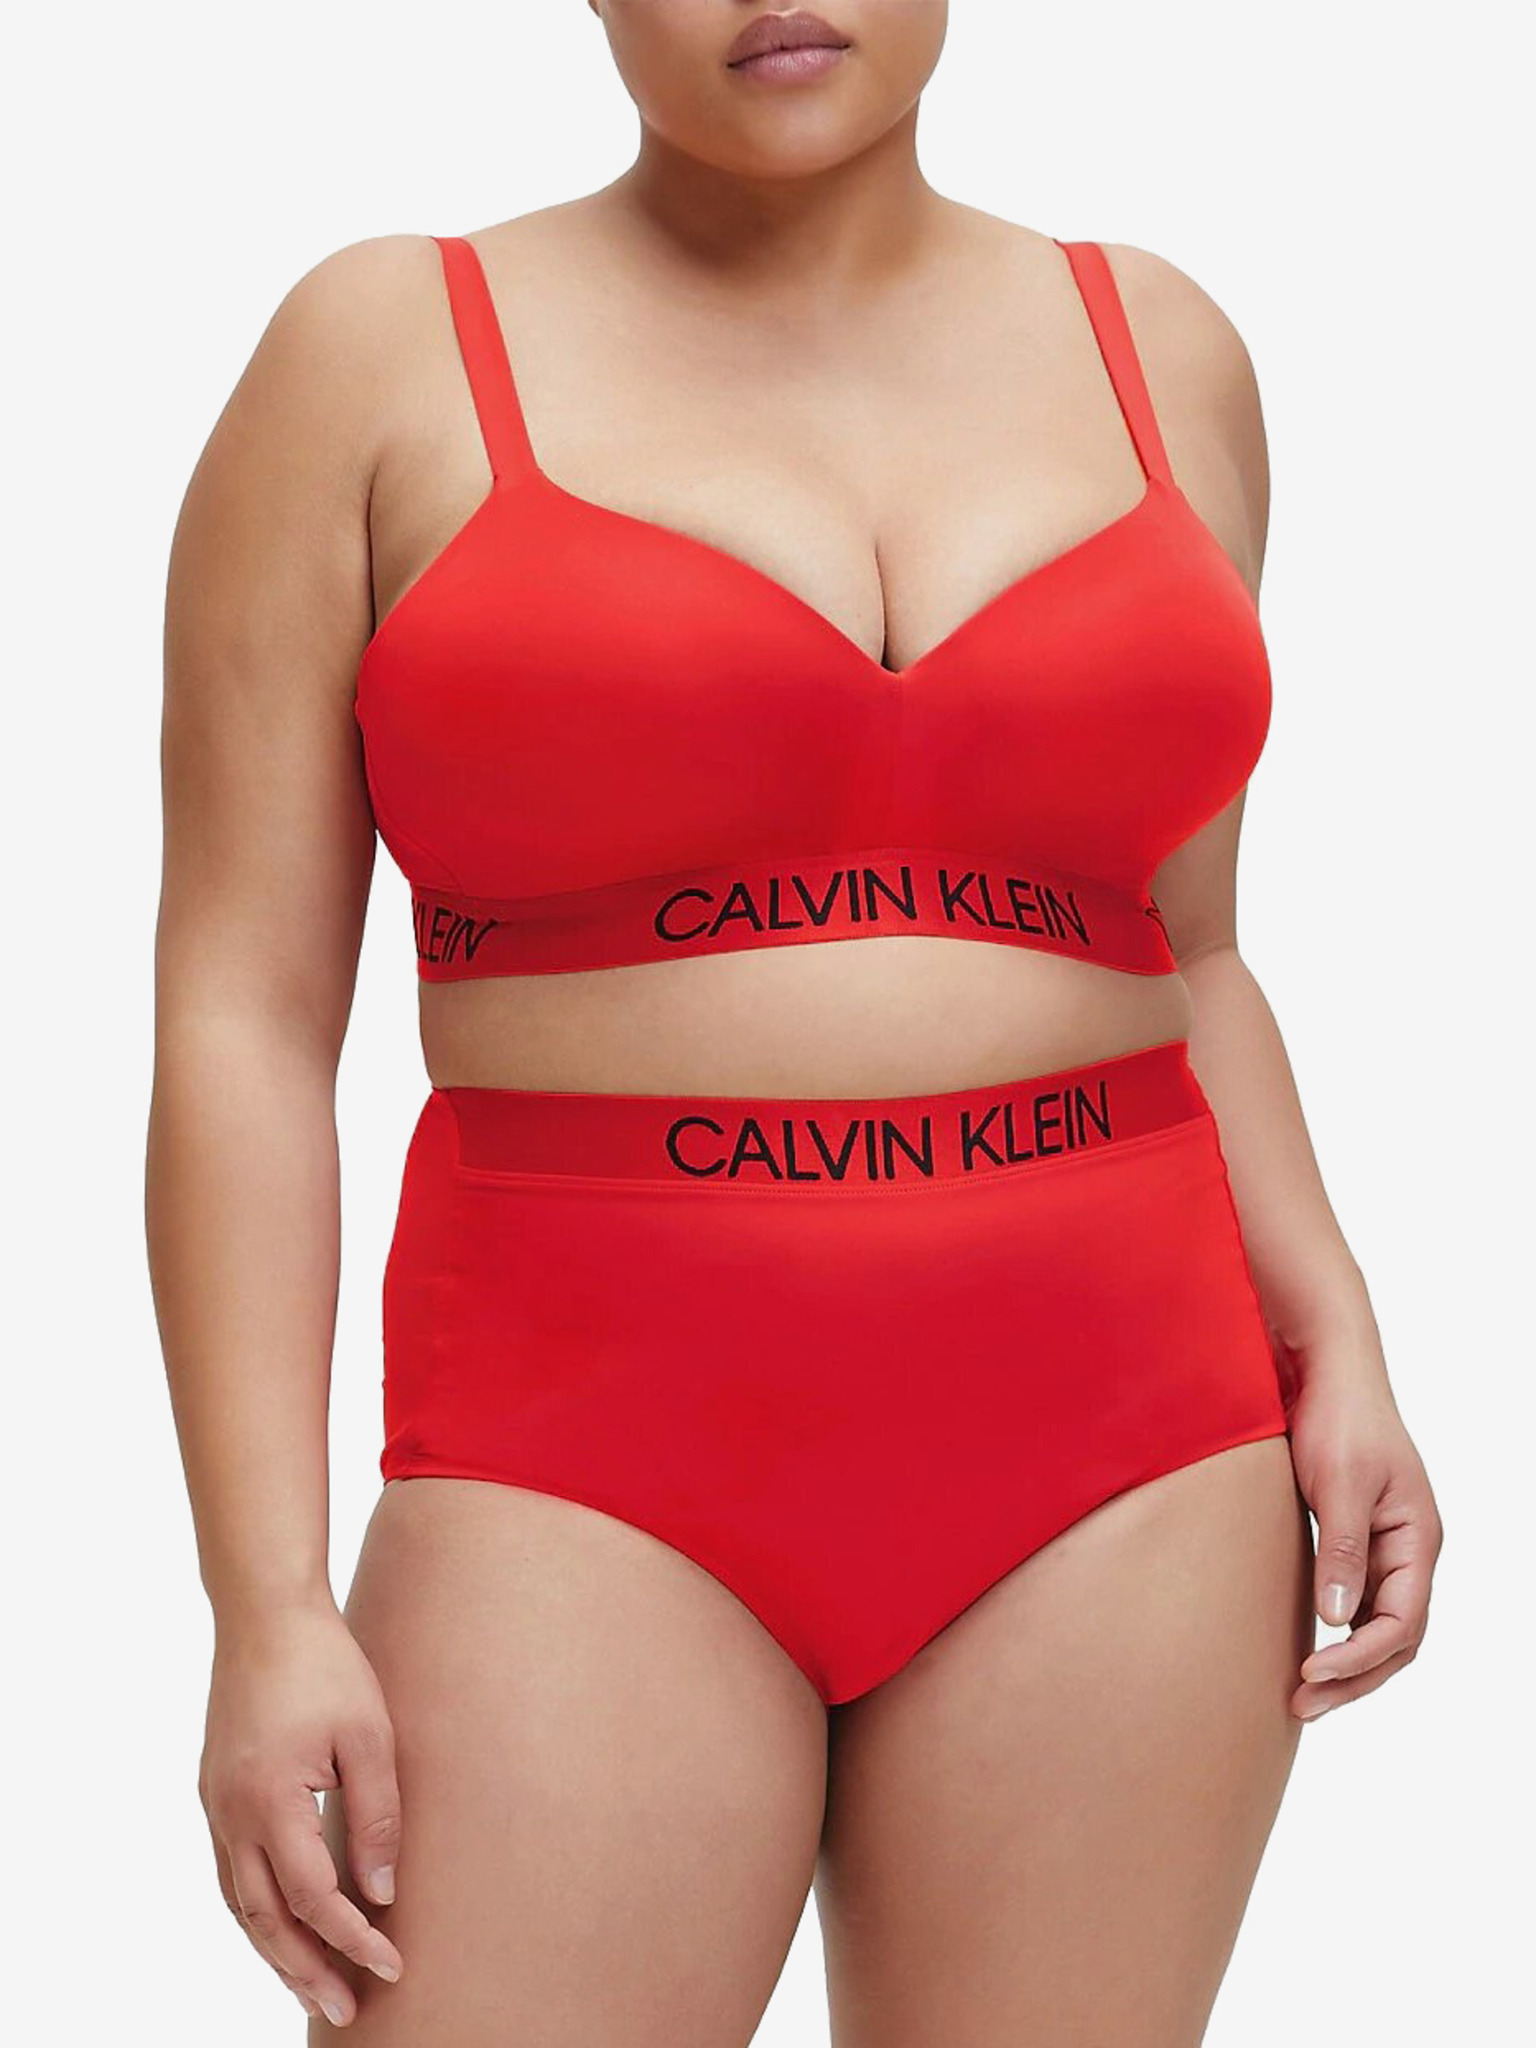 Calvin Klein Women's Red Lingerie